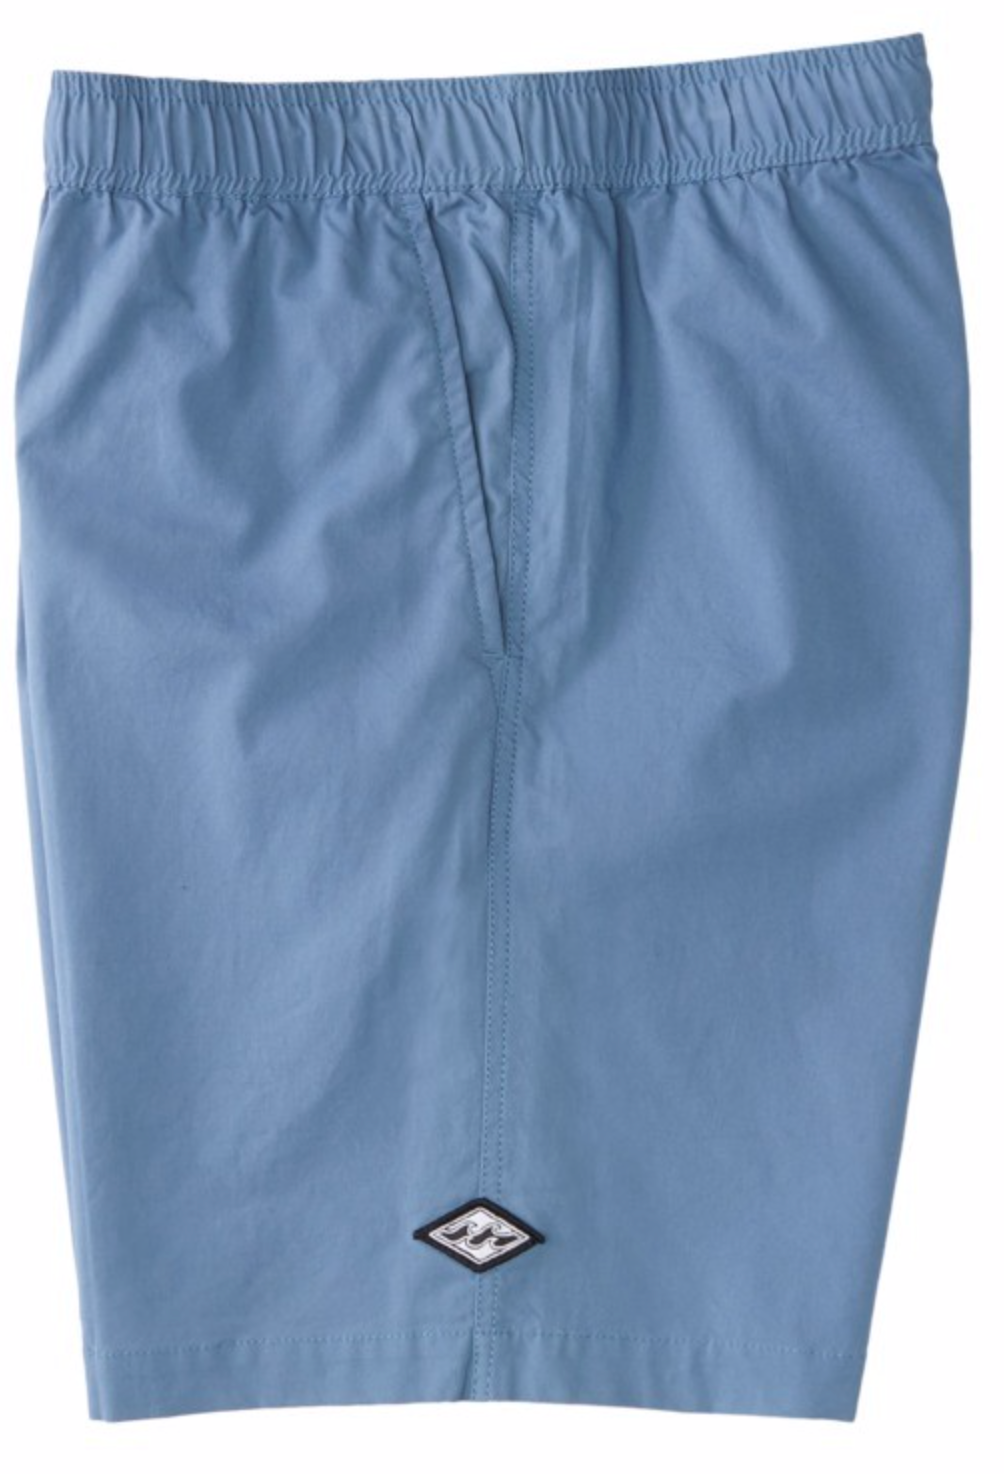 Billabong Mens Layback Solid Elasticated Shorts - Carolina Blue